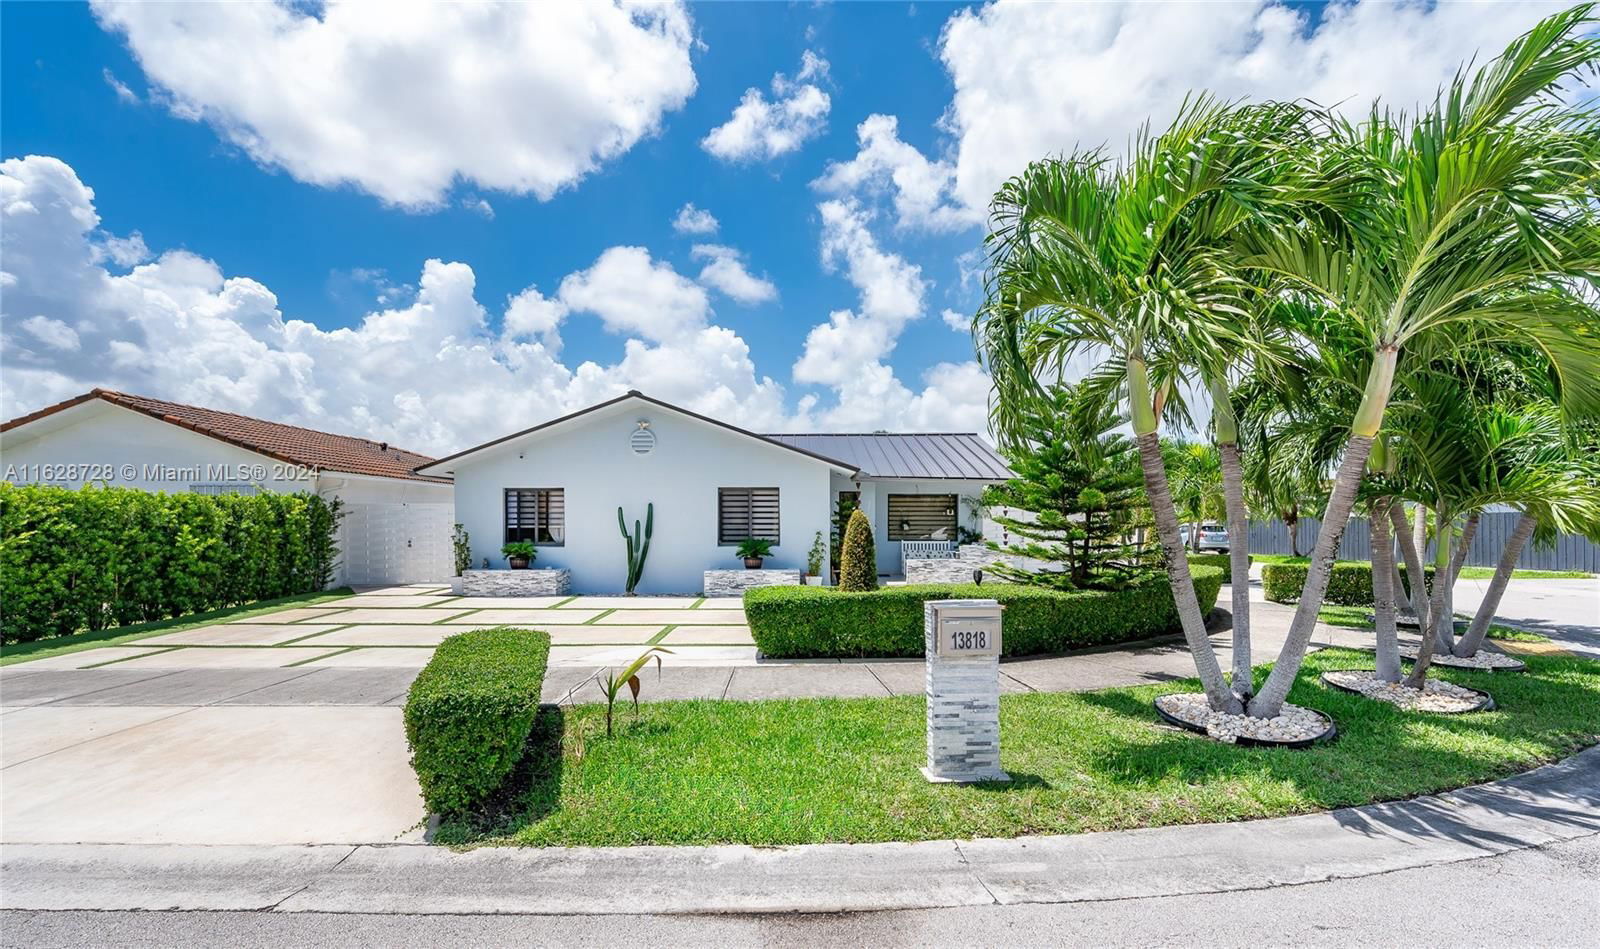 Real estate property located at 13818 11th St, Miami-Dade County, ALBA GARDENS SEC 1, Miami, FL